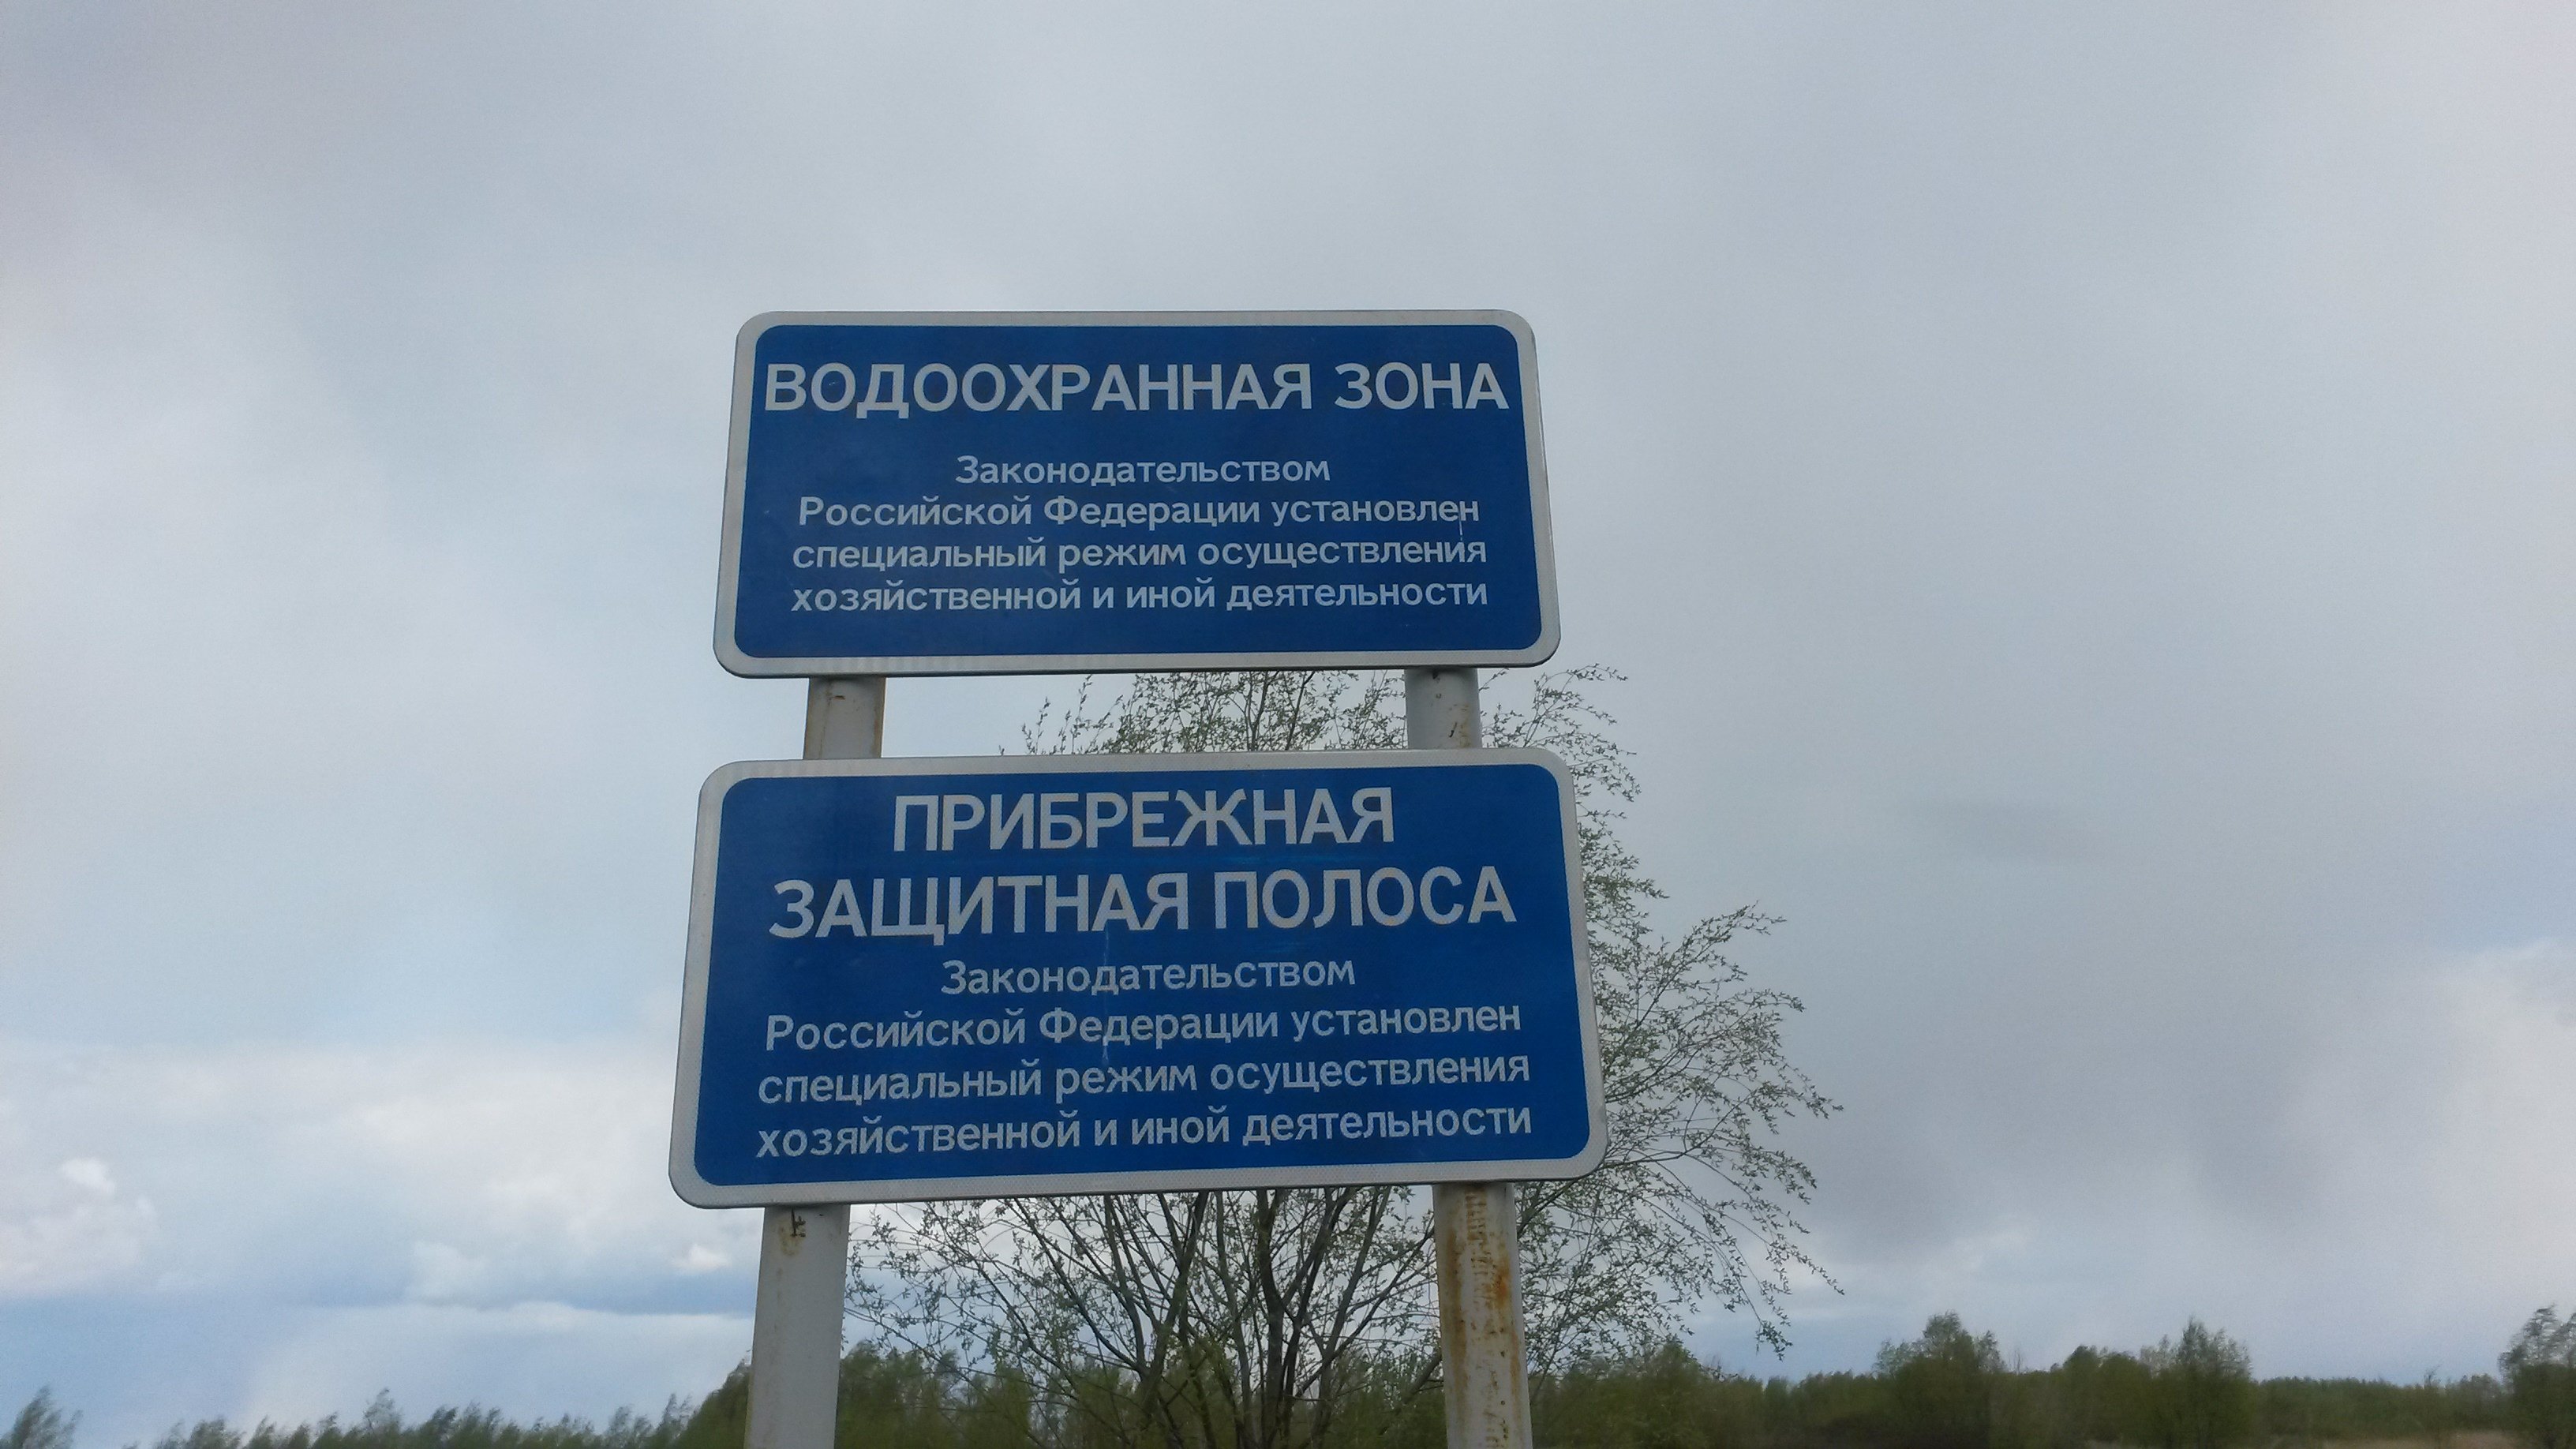 Вода охранная зона. Береговая полоса и водоохранная зона Москвы реки. Знаки водоохранная зона и Прибрежная защитная полоса. Табличка водоохранная зона. Границы водоохранной зоны.